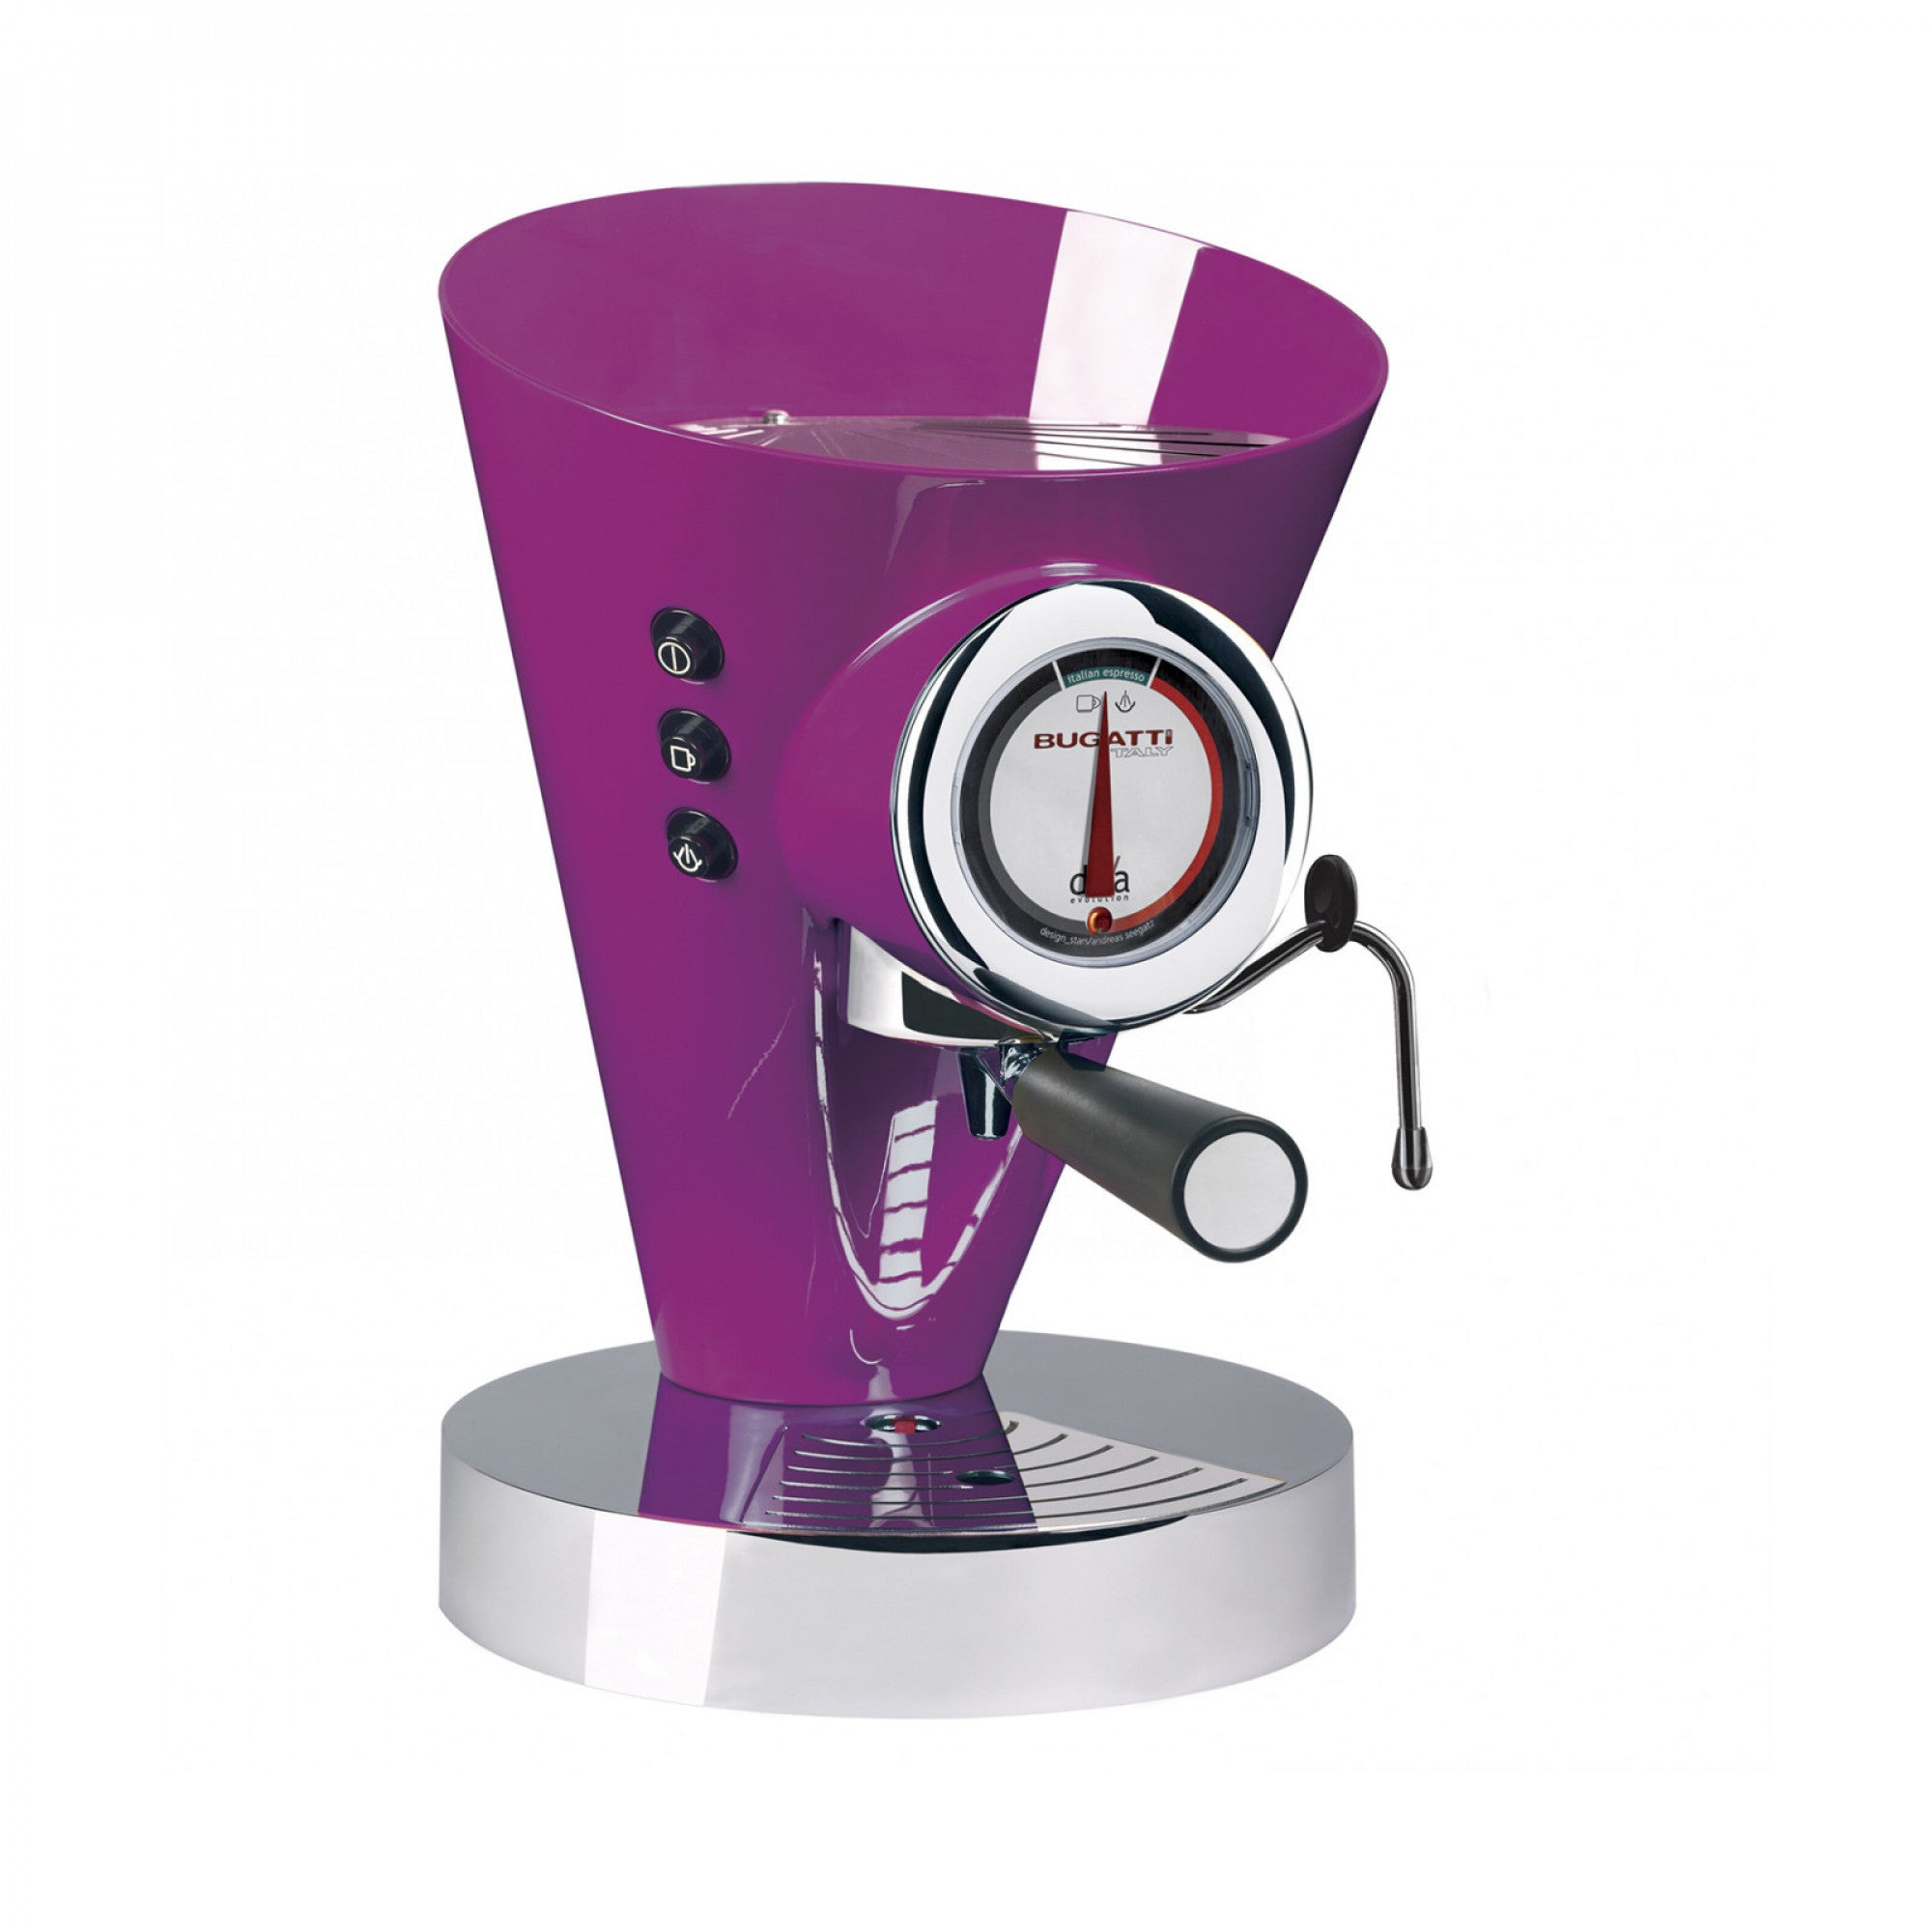 BUGATTI, Diva Evolution, Espresso and Cappuccino Coffee Machine, for Ground Coffee Powder and Pods, Non-Stop Steam Function, 15 bar, 950 W, 0.8 Liter Capacity, Elegant Design